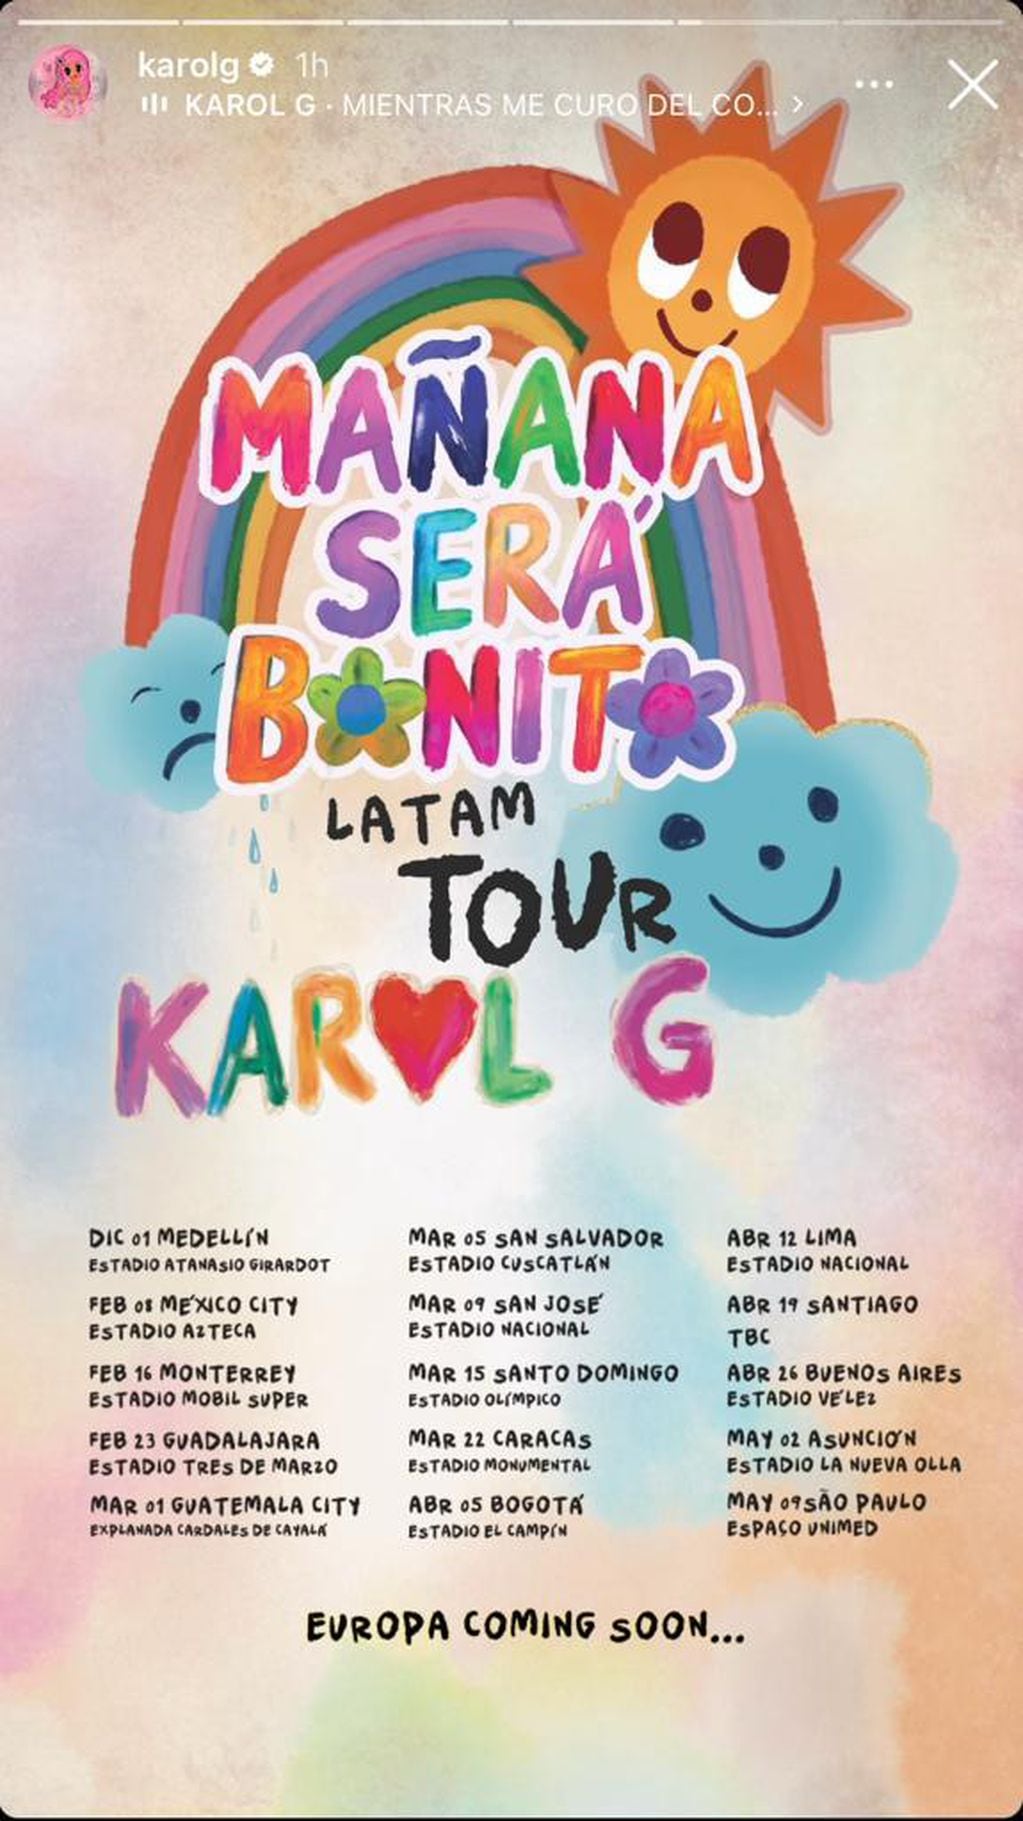 Karol G confirma su regreso a Chile con su gira “Mañana será bonito”